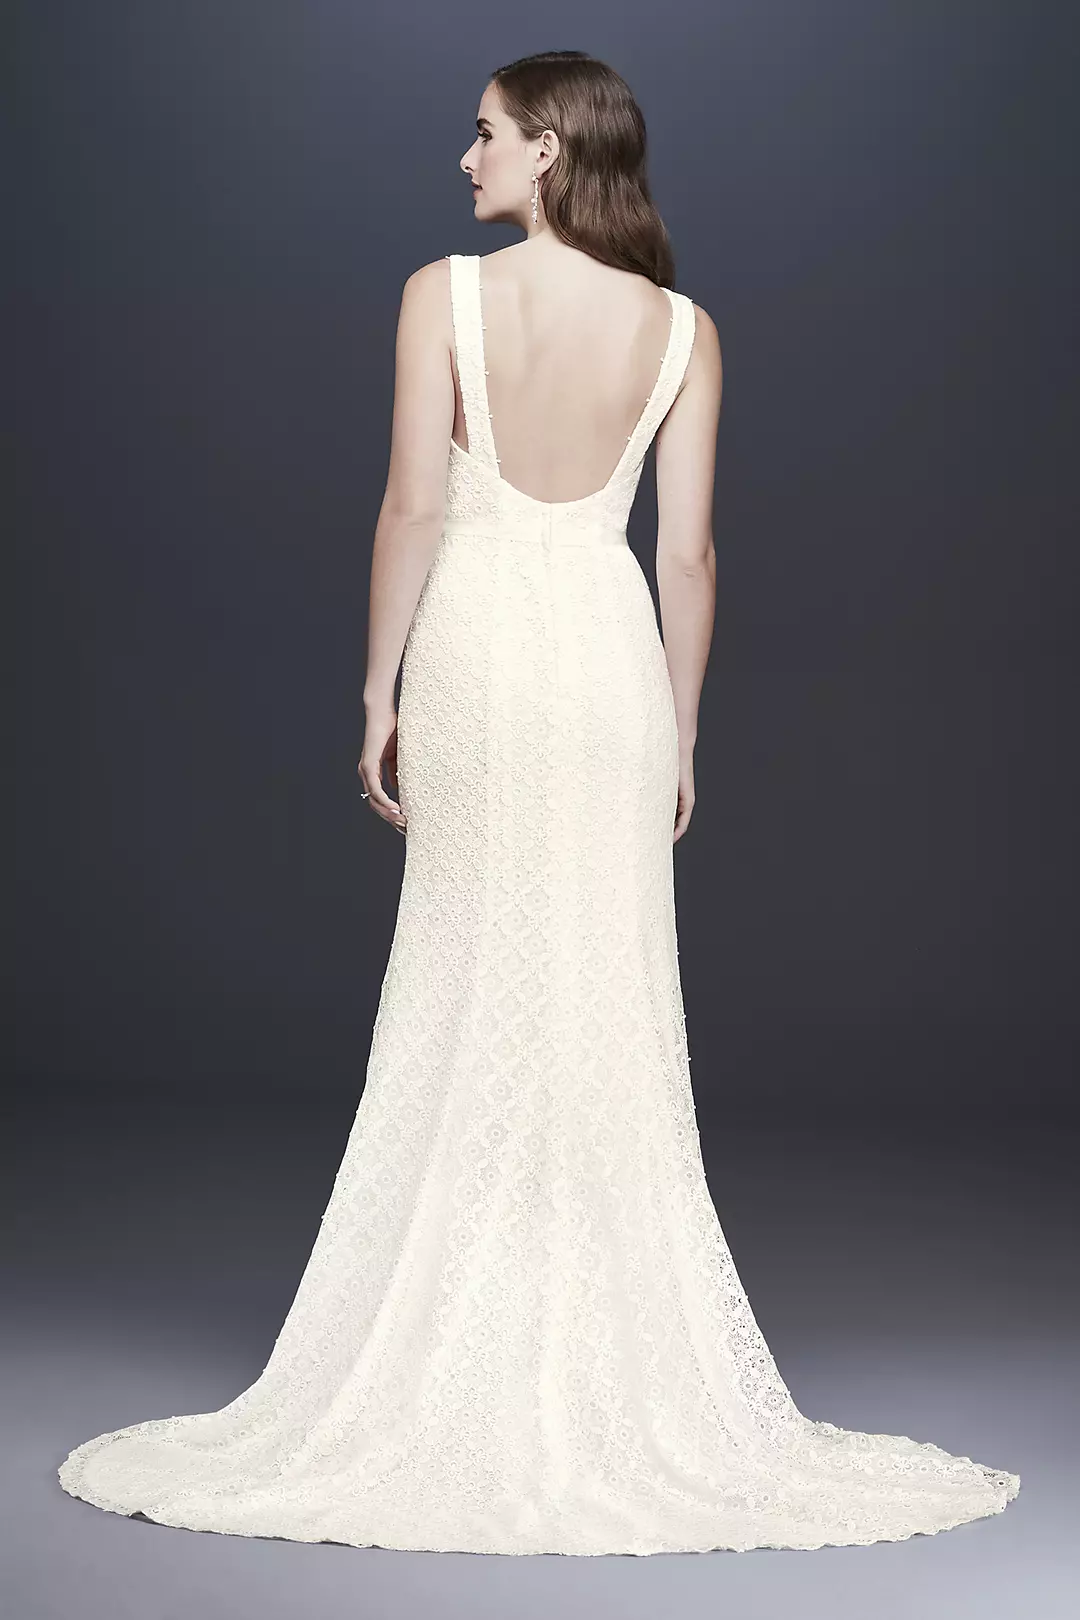 Geometric Lace V-Neck Sheath Wedding Dress Image 2